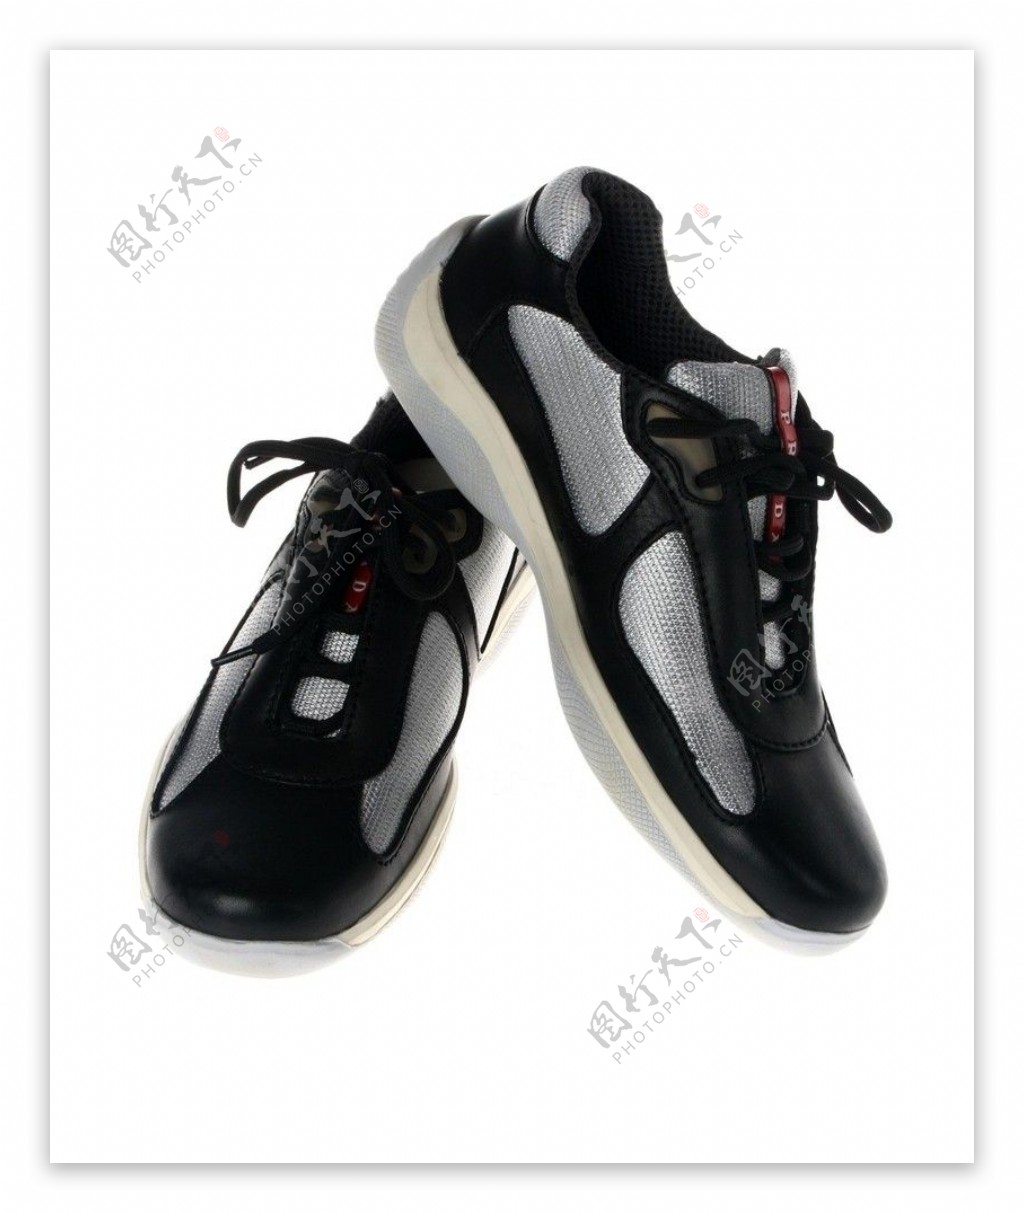 普拉达男式运动鞋图片